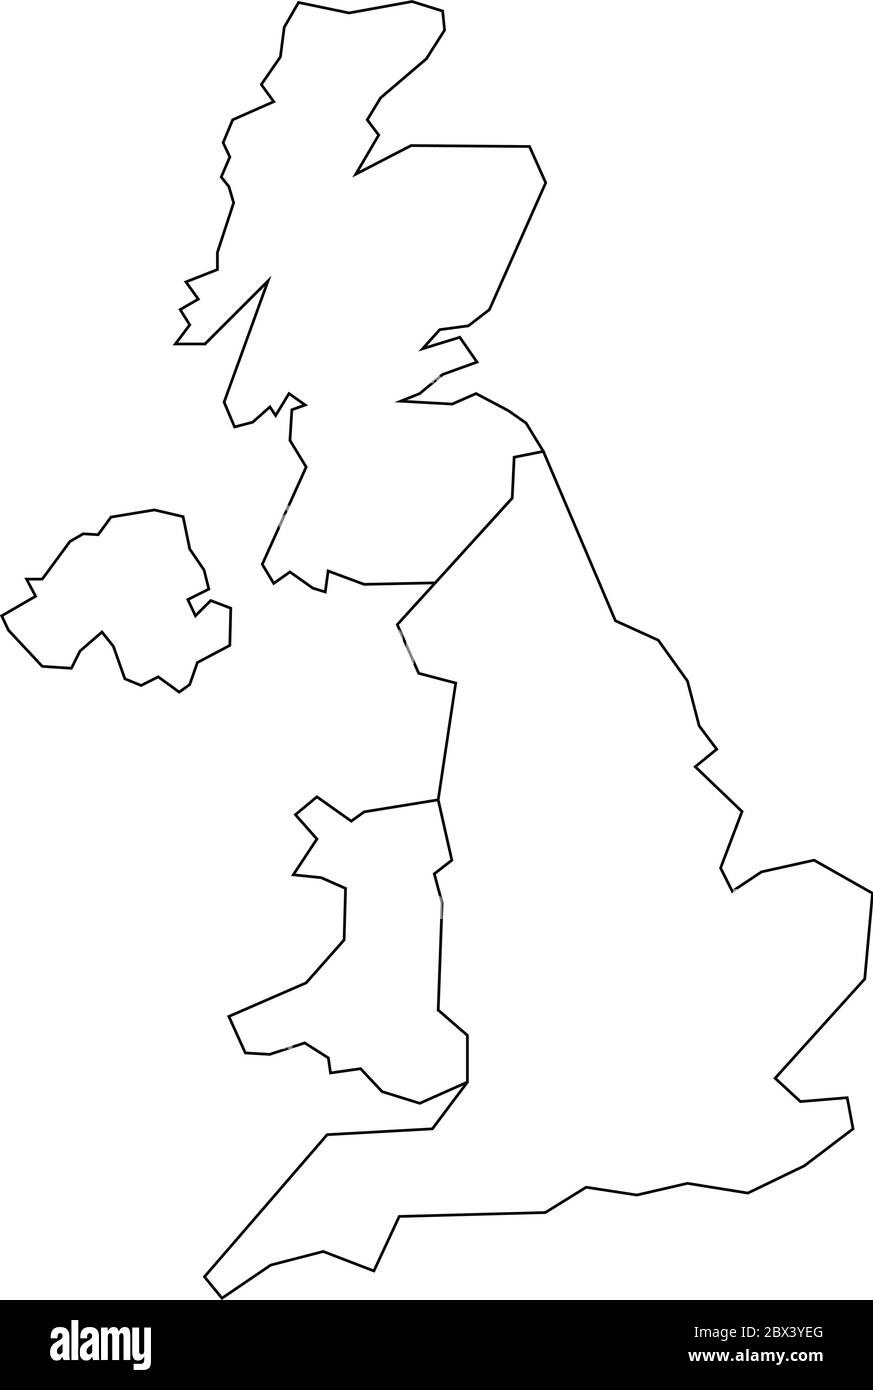 Carte des pays du Royaume-Uni - Angleterre, pays de Galles, Écosse et Irlande du Nord. Carte de contour simple à vecteur plat. Illustration de Vecteur